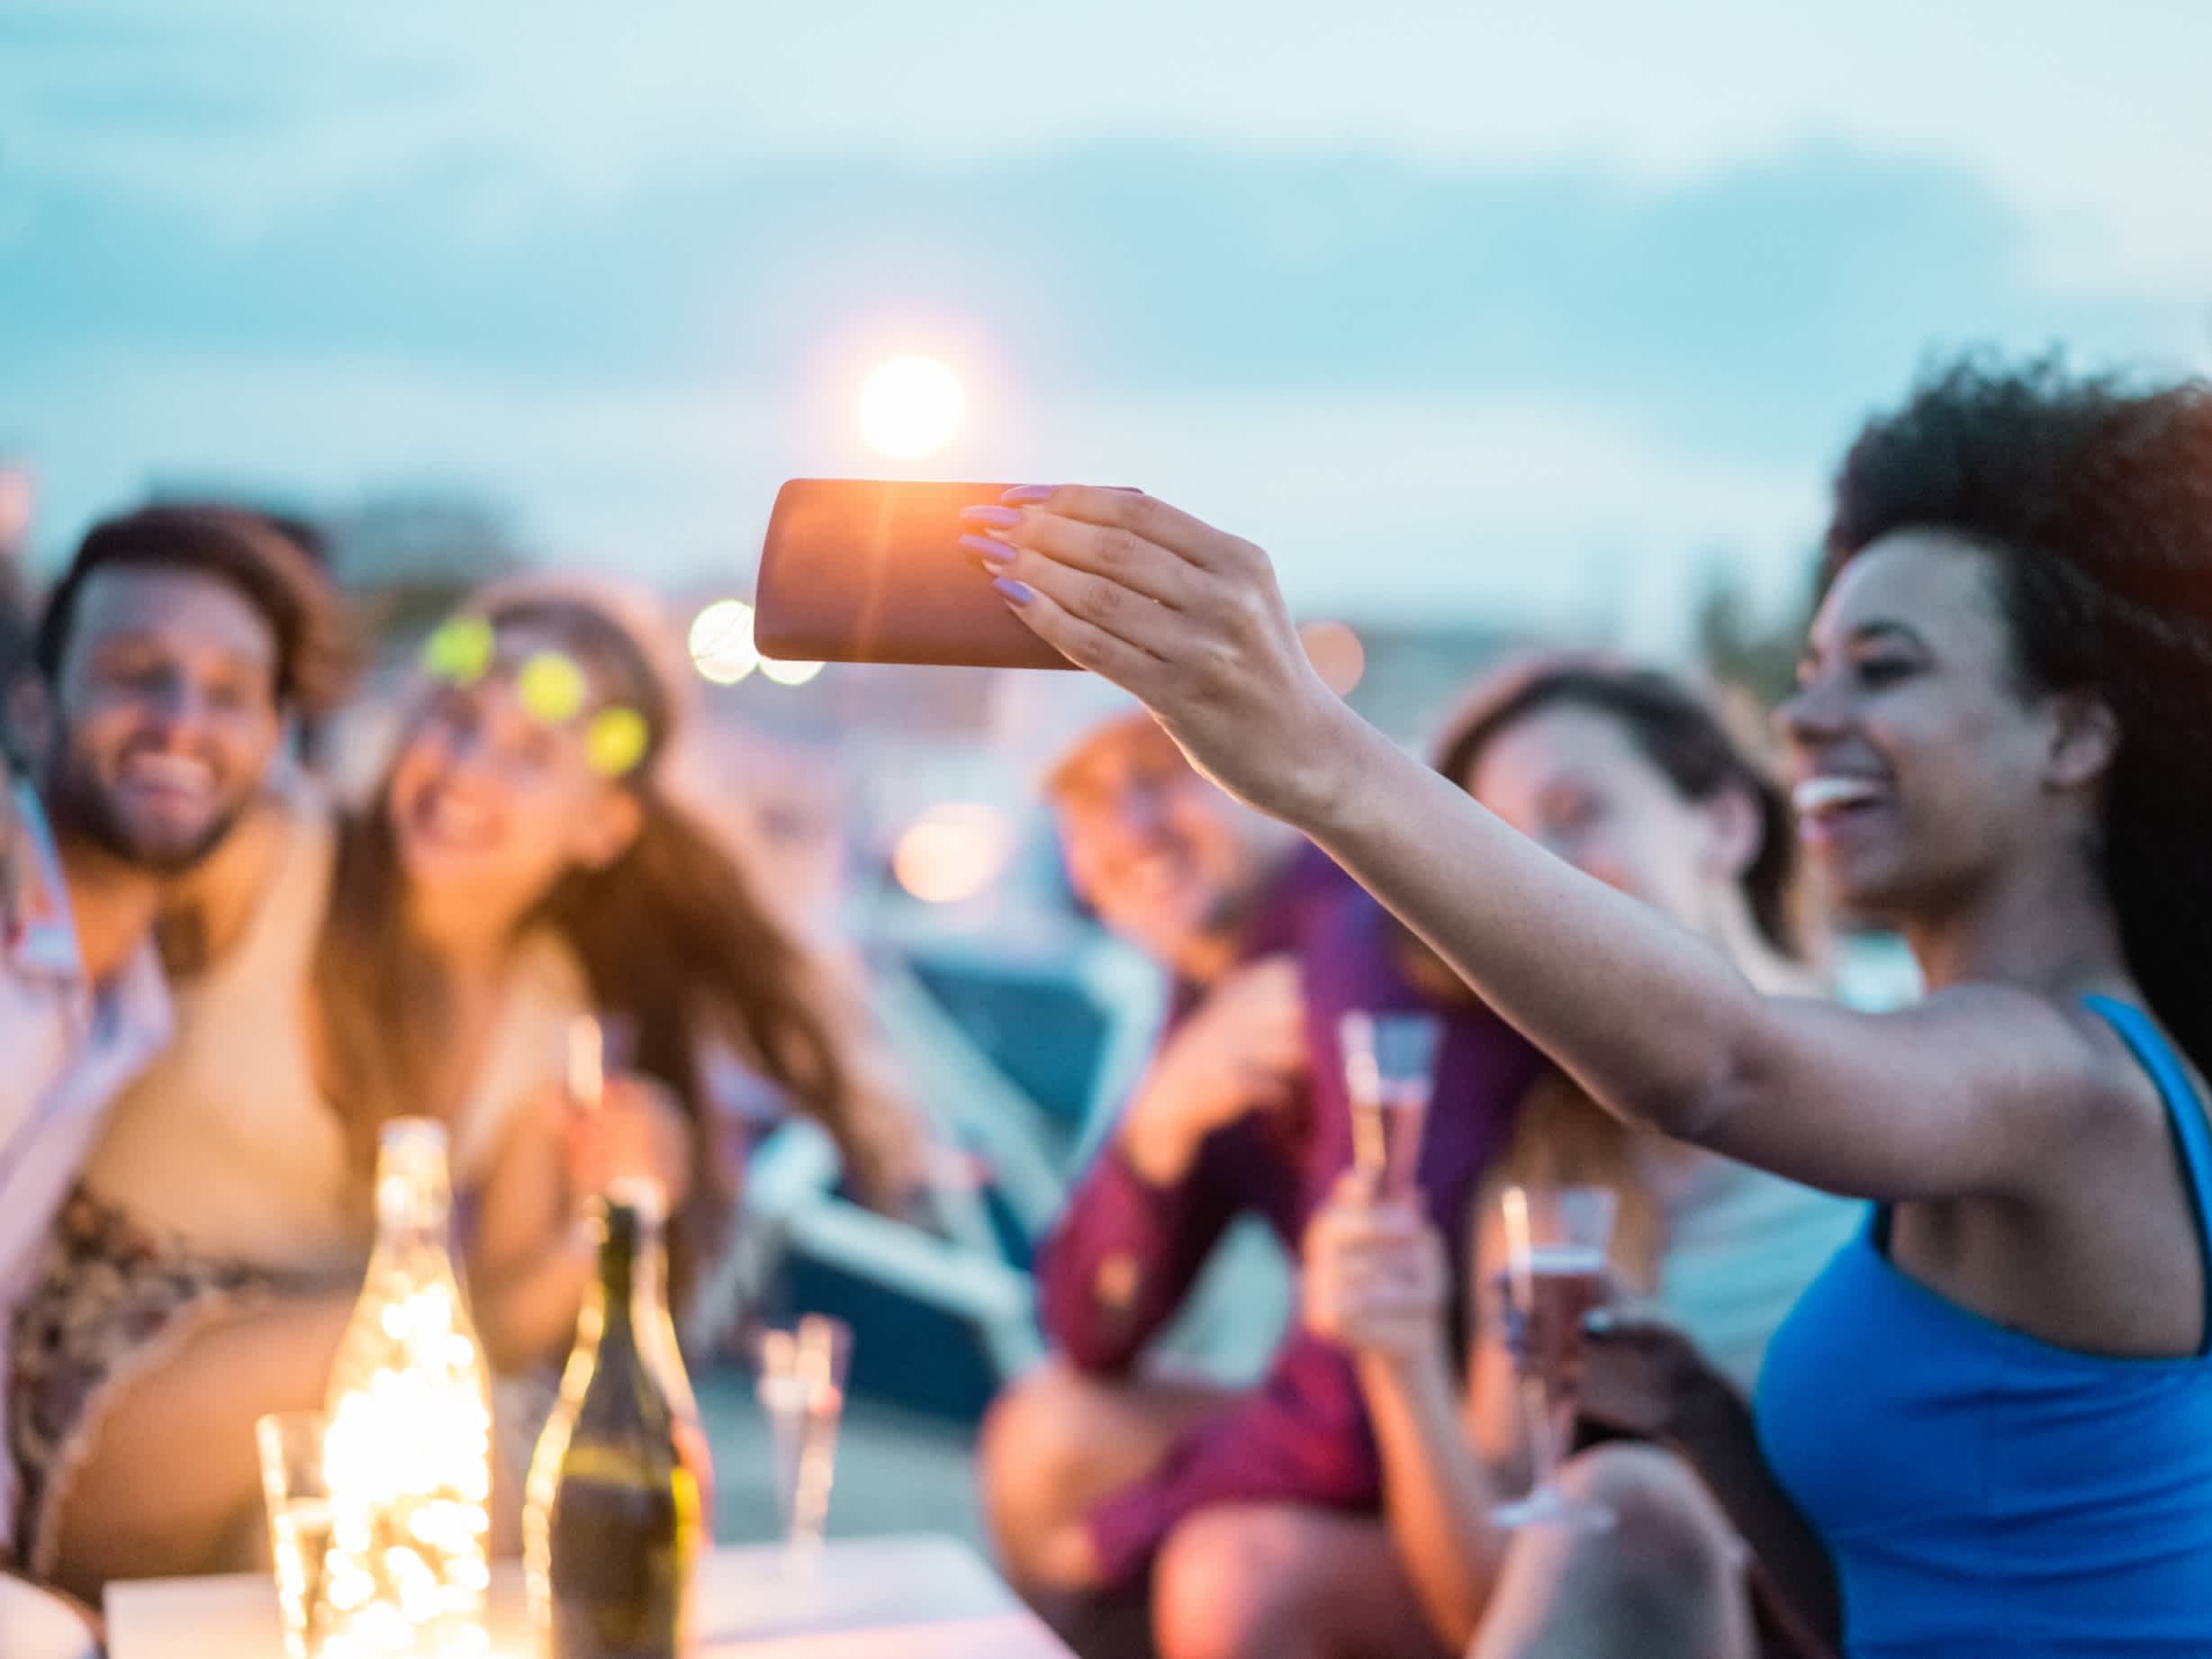 Personnes faisant un selfie avec un smartphone lors d'une fête de plein air sur une plage